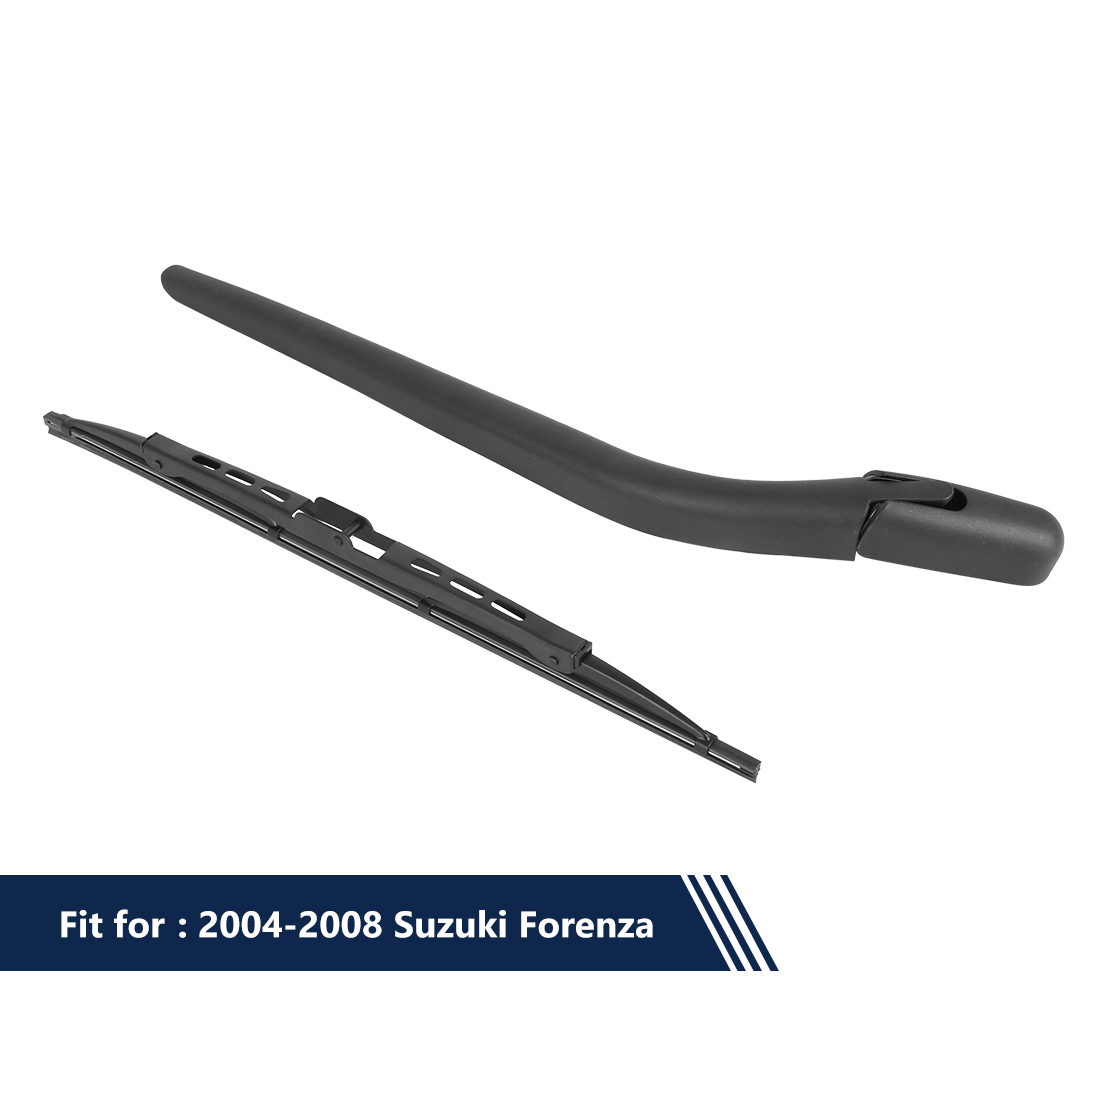 Unique Bargains Rear Windshield Wiper Blade Arm Set for Suzuki Forenza 2004-2008 14 Inch 355mm